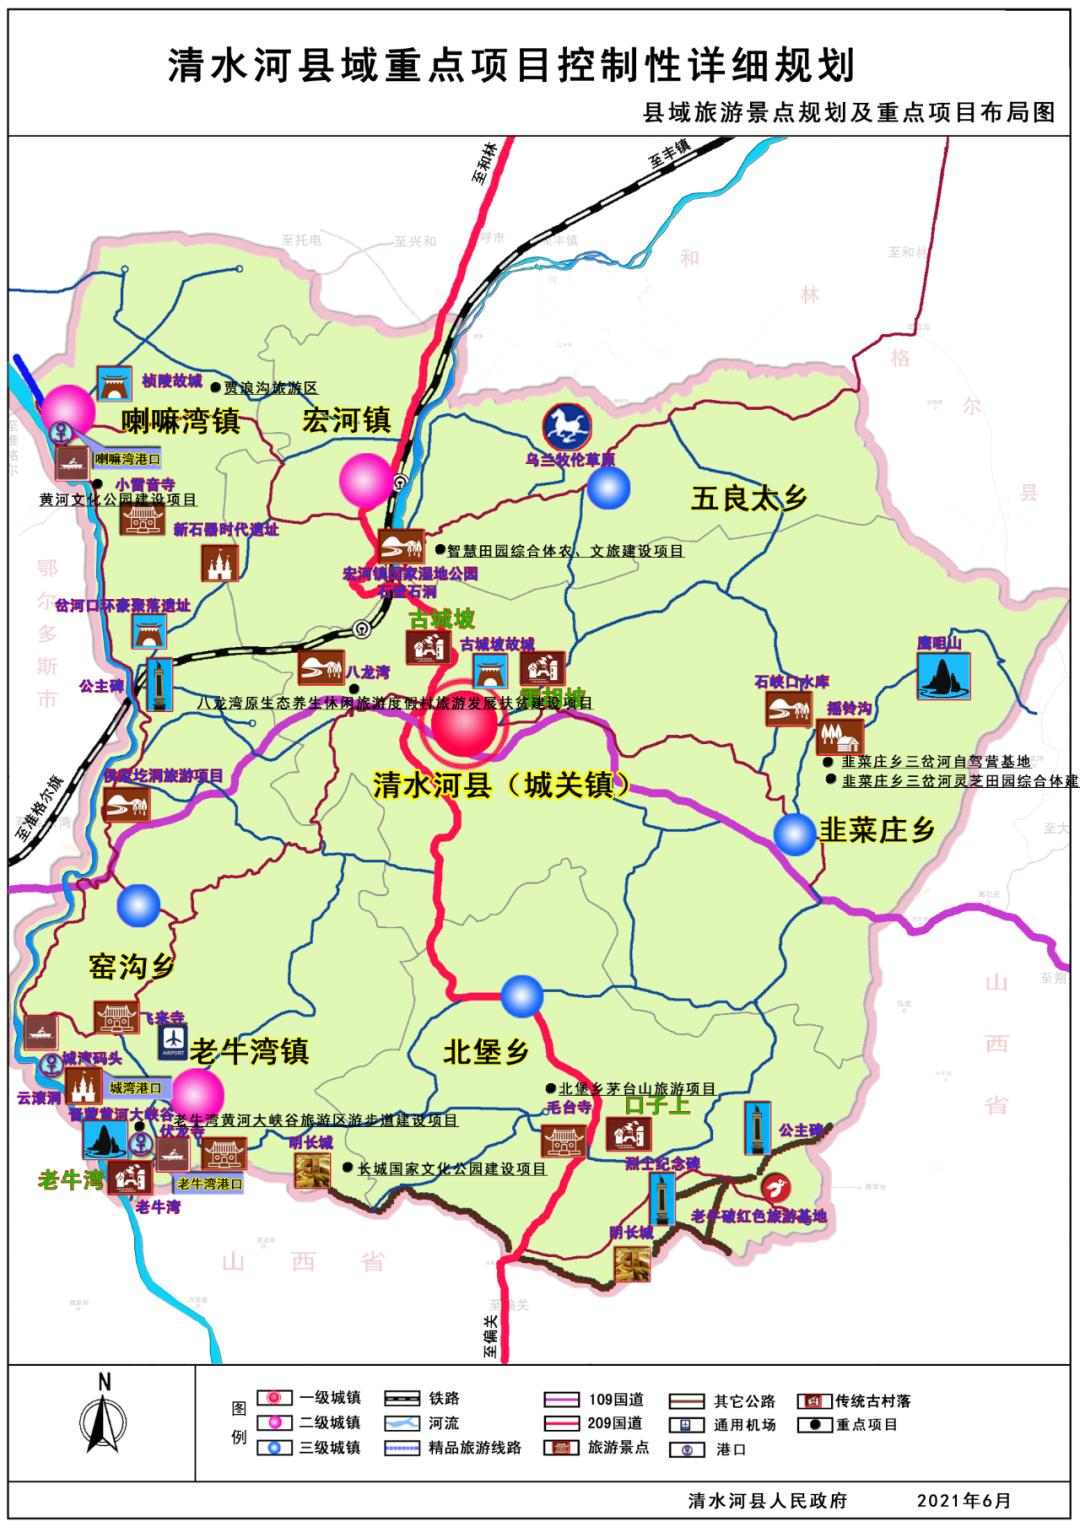 清水河县城关镇中心城区及县域重点项目控制性详细规划草案的公示